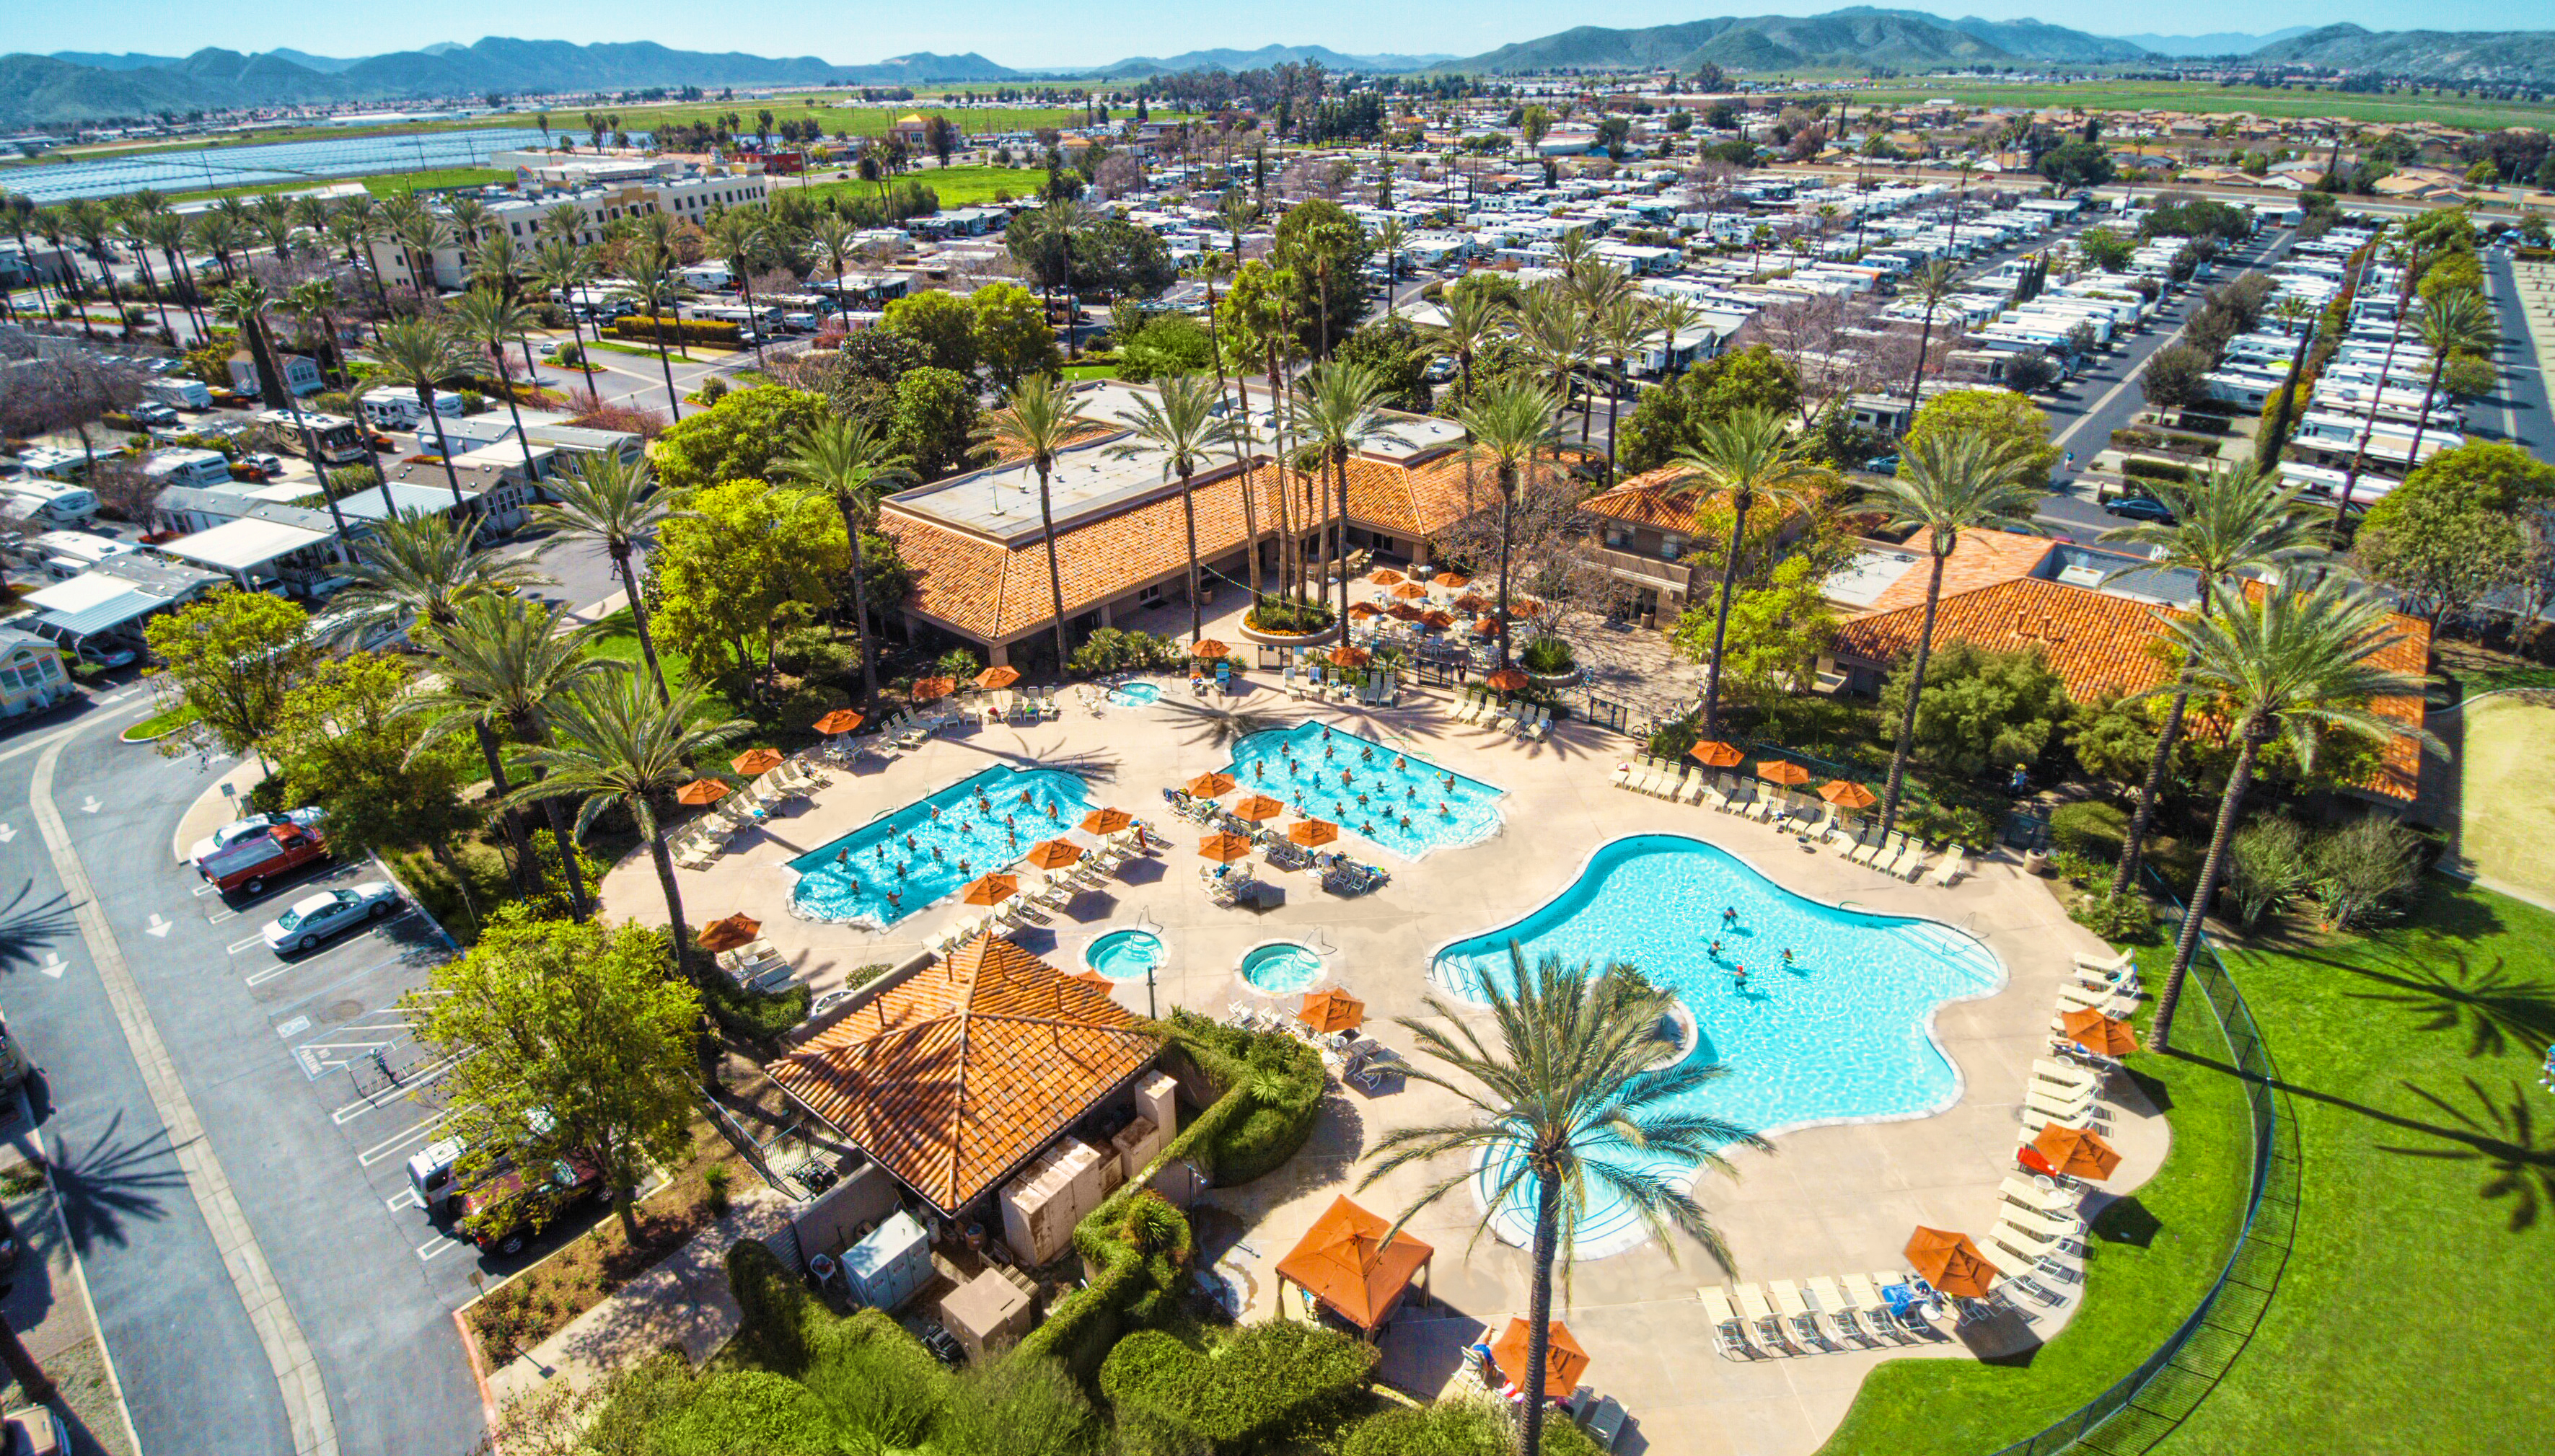 Aerial view of Golden Village Palms RV Resort